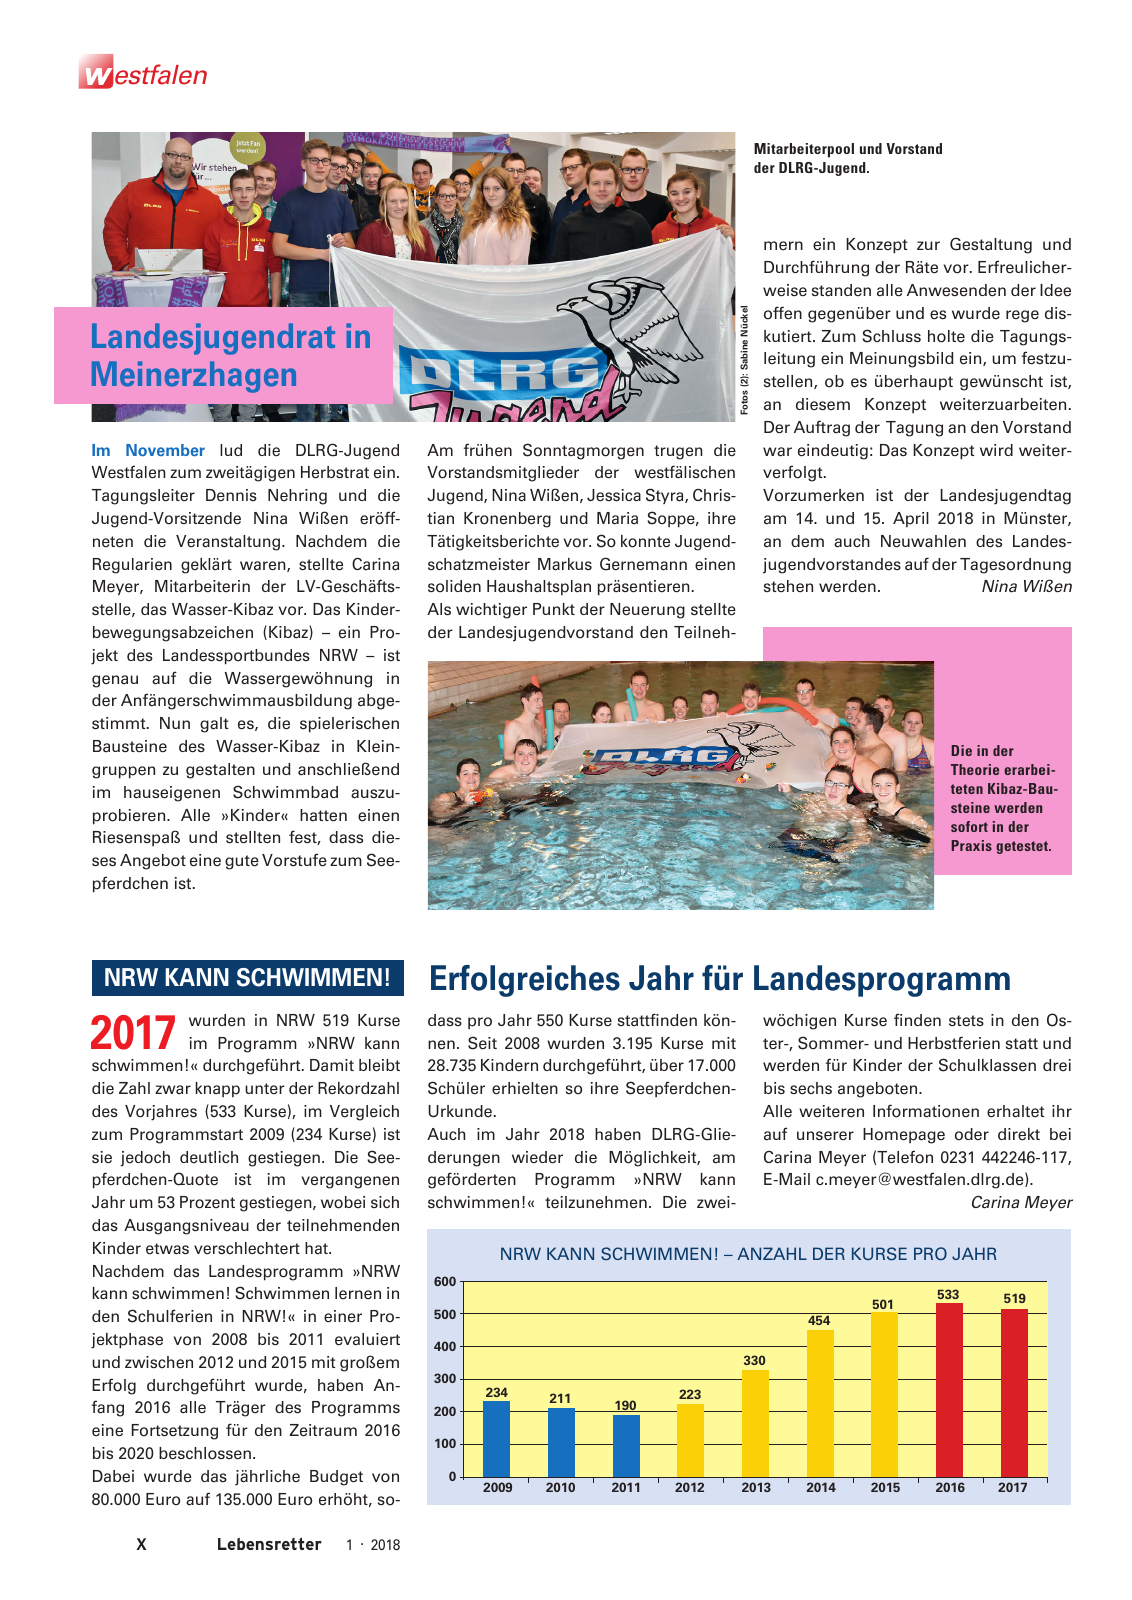 Vorschau Lebensretter 1/2018 - Regionalausgabe Westfalen Seite 12